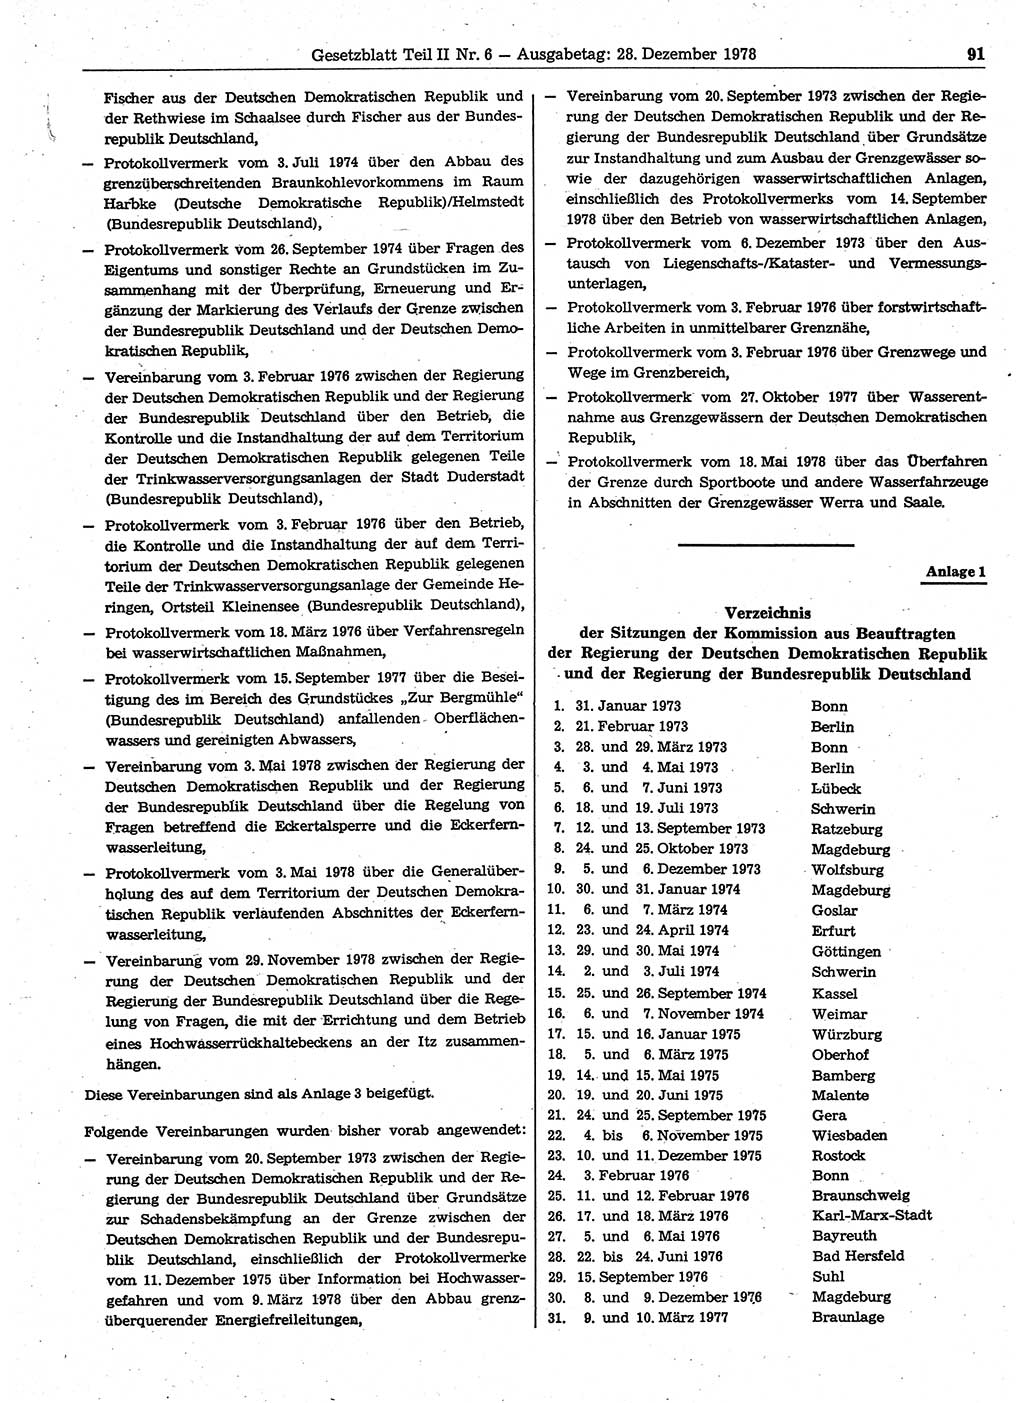 Gesetzblatt (GBl.) der Deutschen Demokratischen Republik (DDR) Teil ⅠⅠ 1978, Seite 91 (GBl. DDR ⅠⅠ 1978, S. 91)